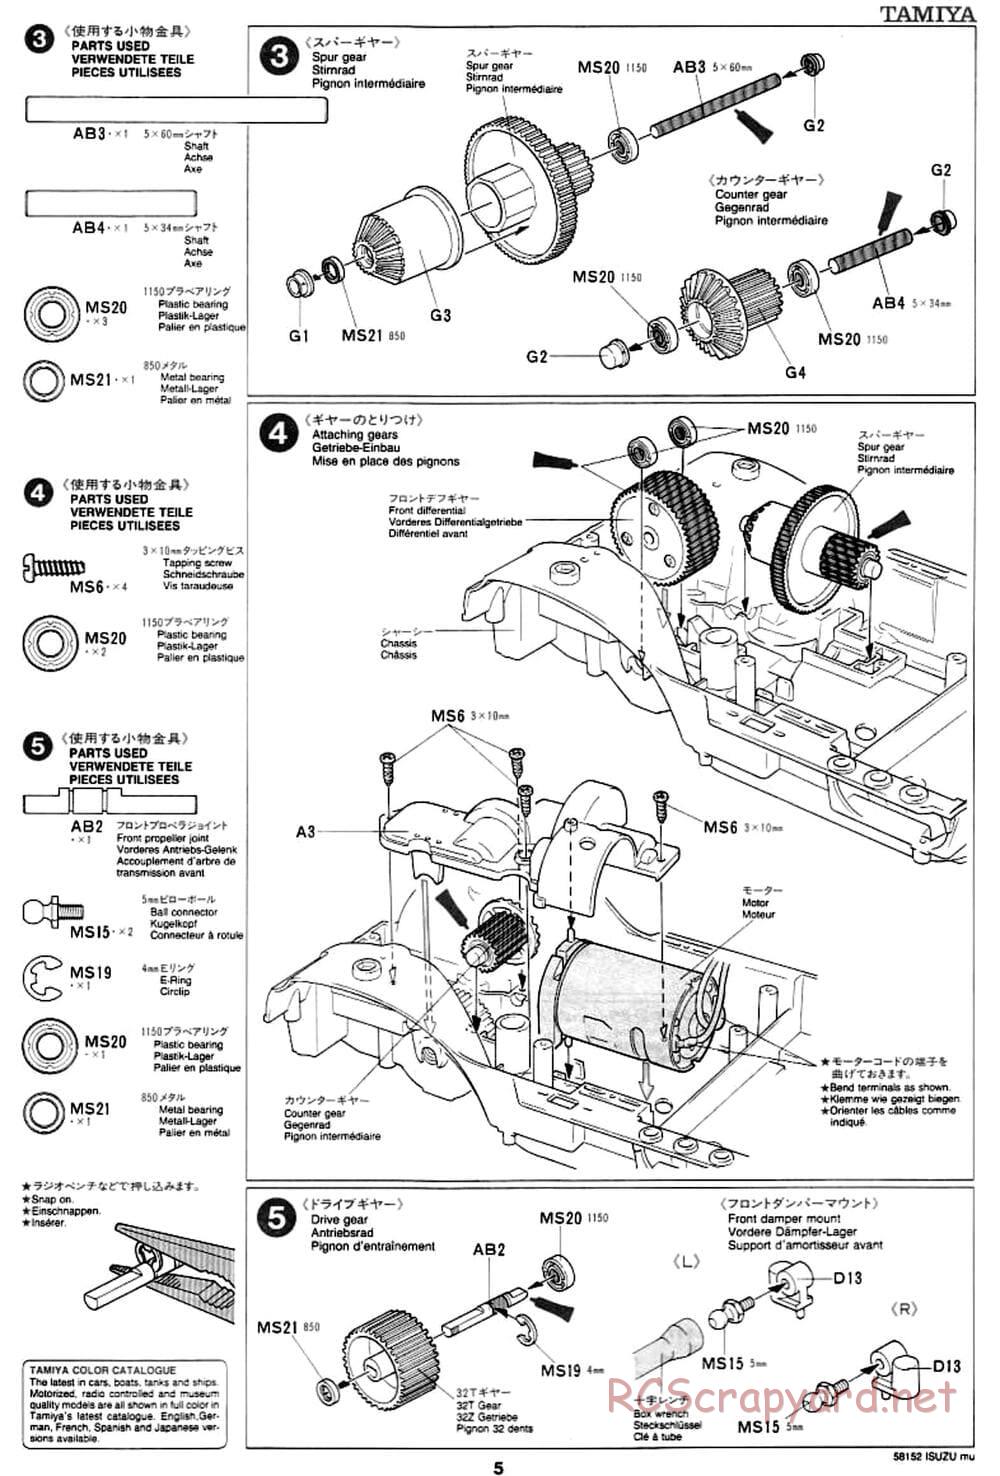 Tamiya - Isuzu Mu - CC-01 Chassis - Manual - Page 5